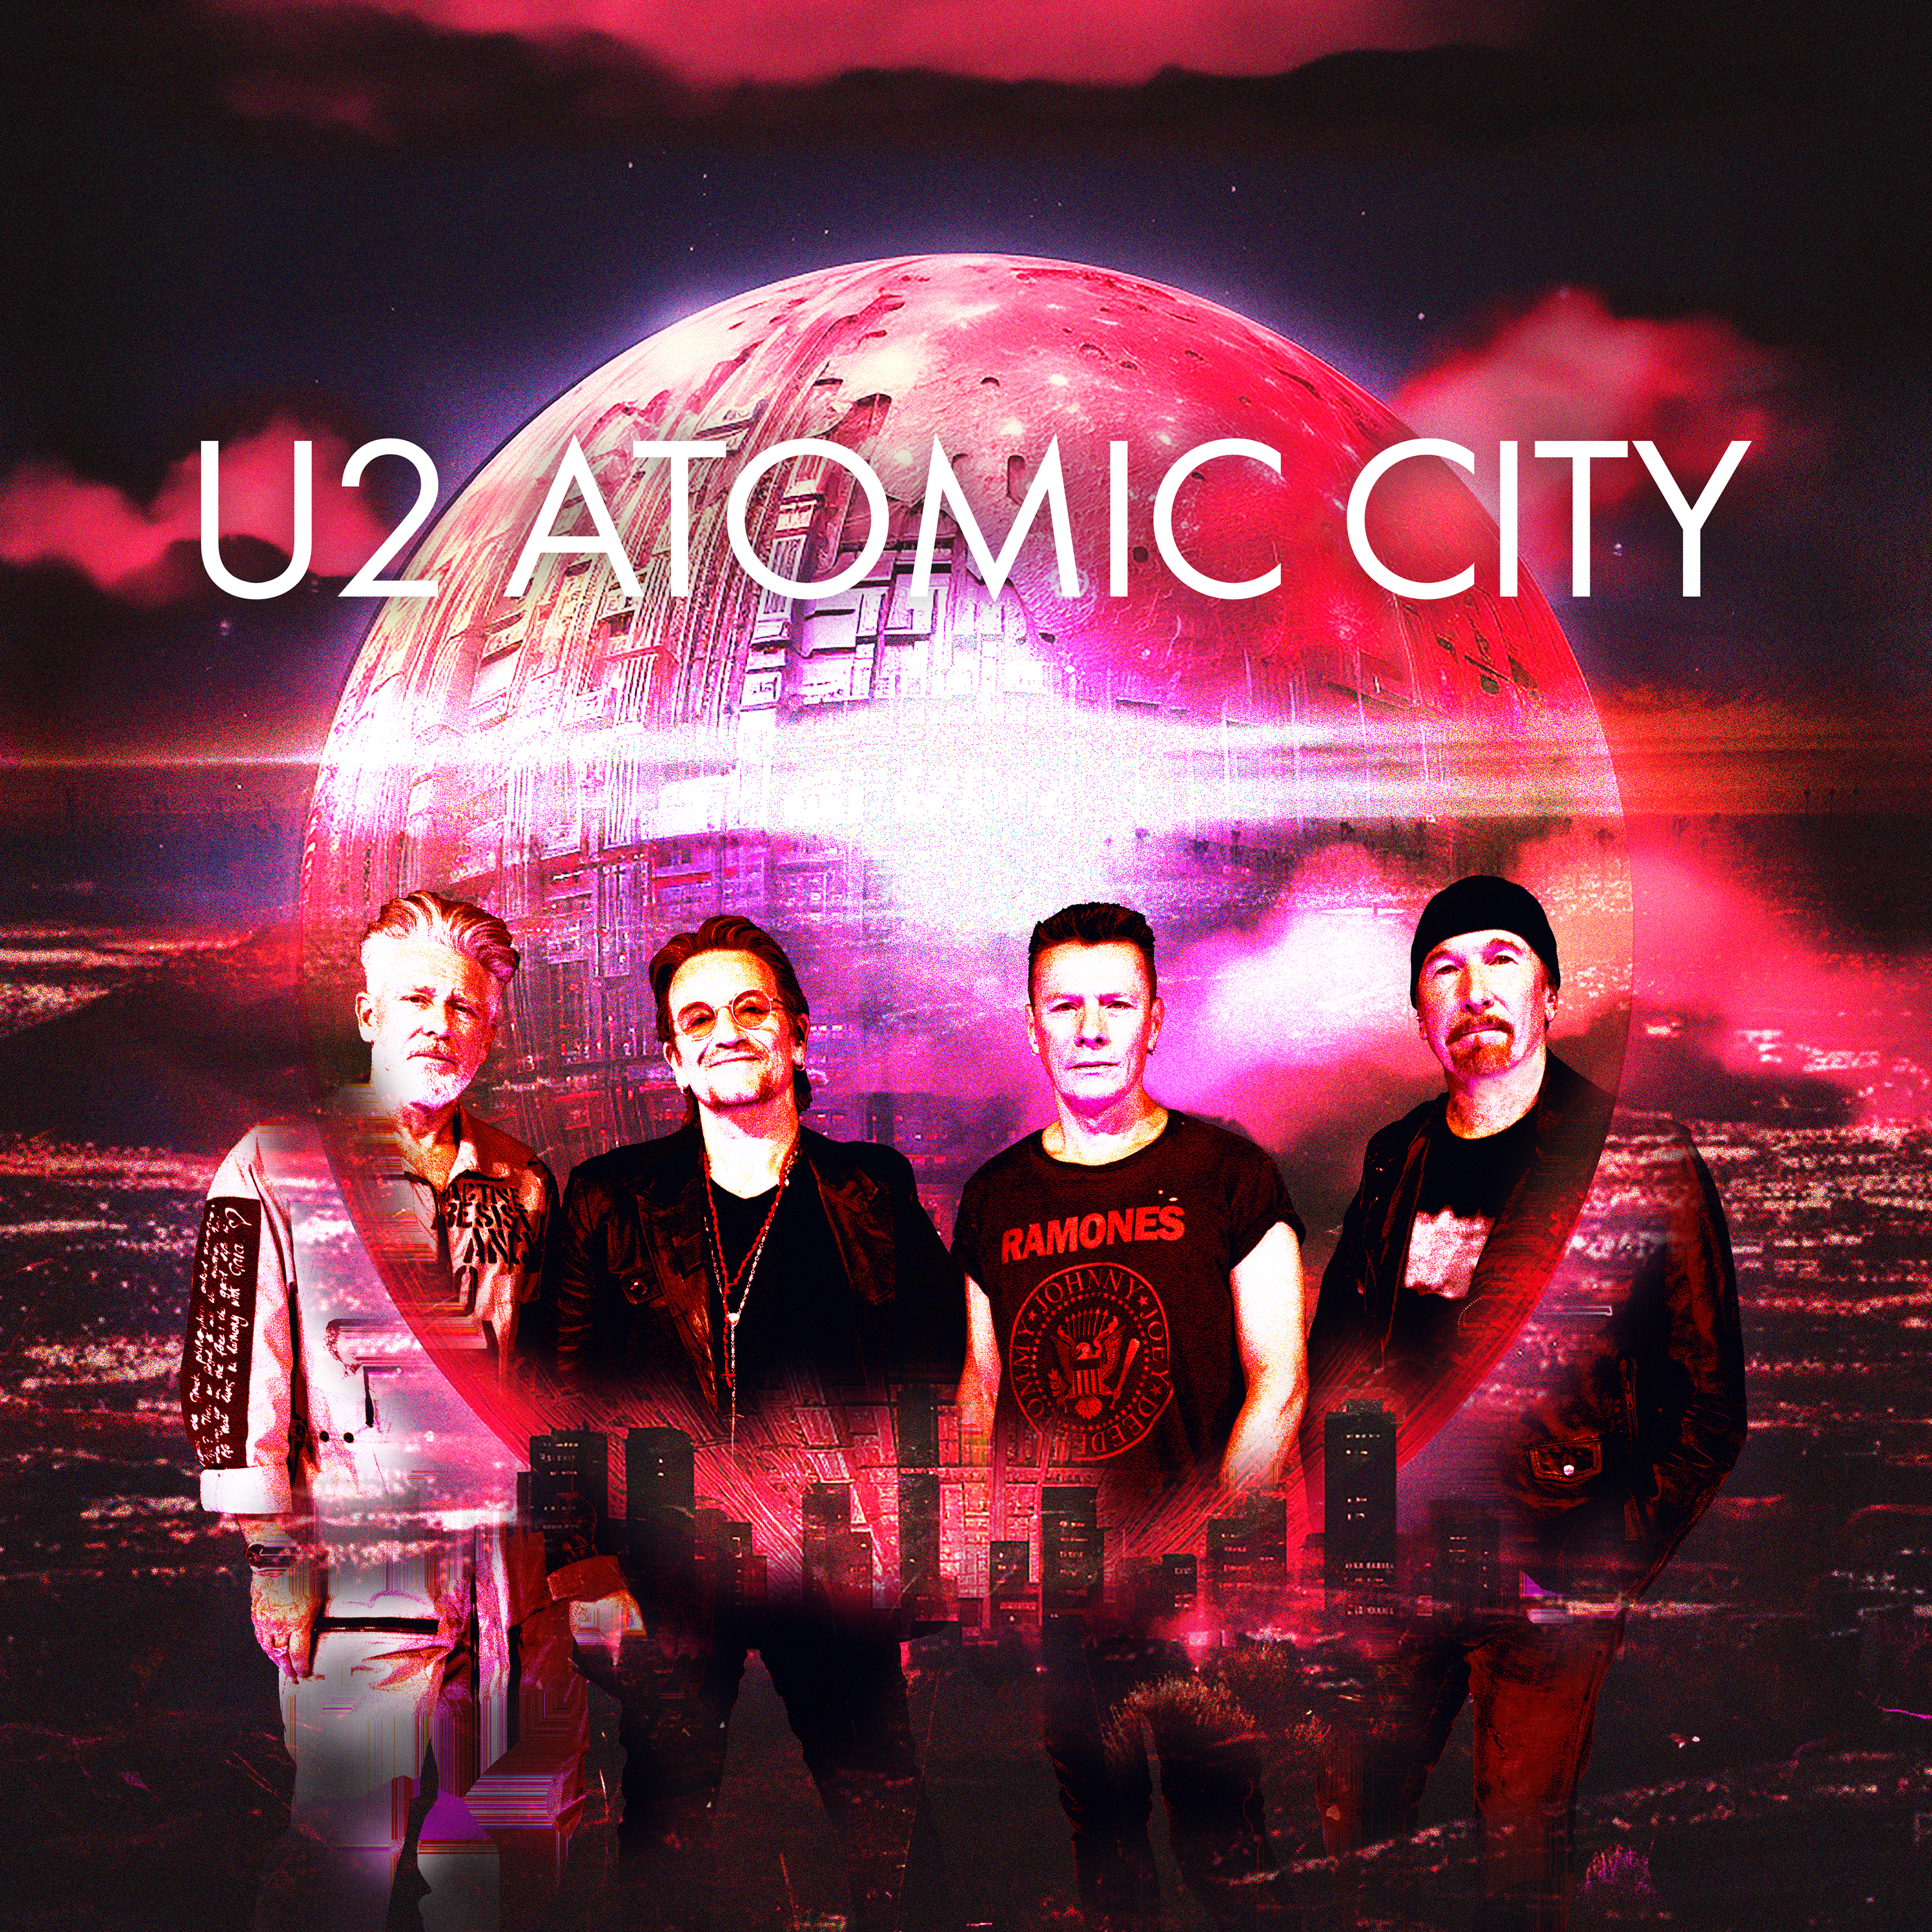 Die irischen Rocker U2 sind mit der neuen Single „Atomic City“ zurückgekehrt, um den Start ihres Auftritts in Las Vegas zu feiern